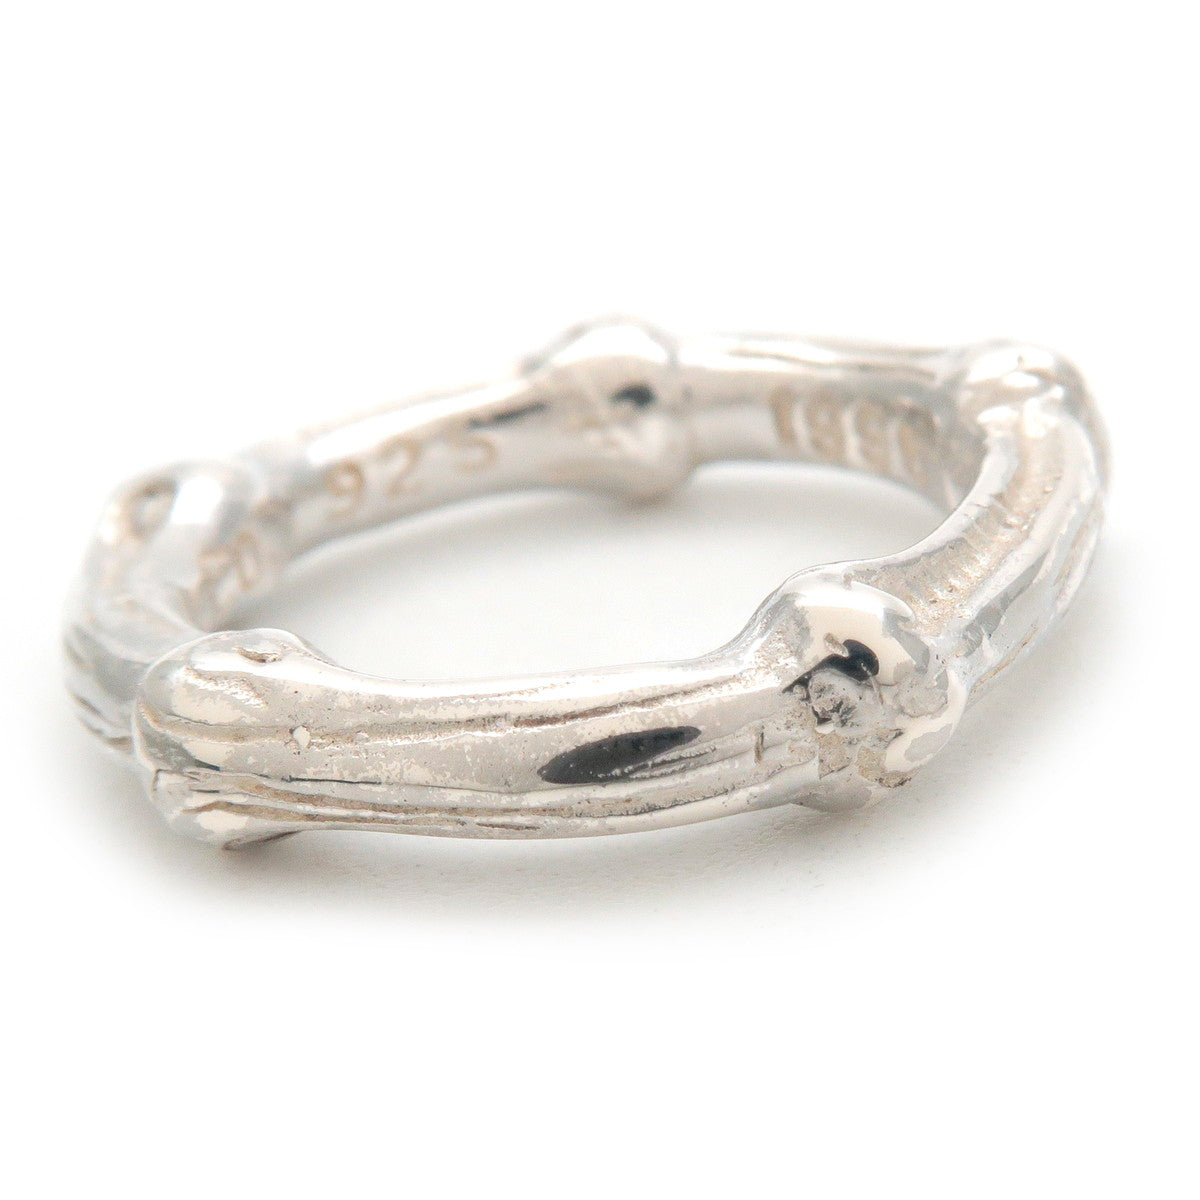 Tiffany & CO. Tiffany Bamboo Ring SV925 Silver #7.5 US4.5 EU48